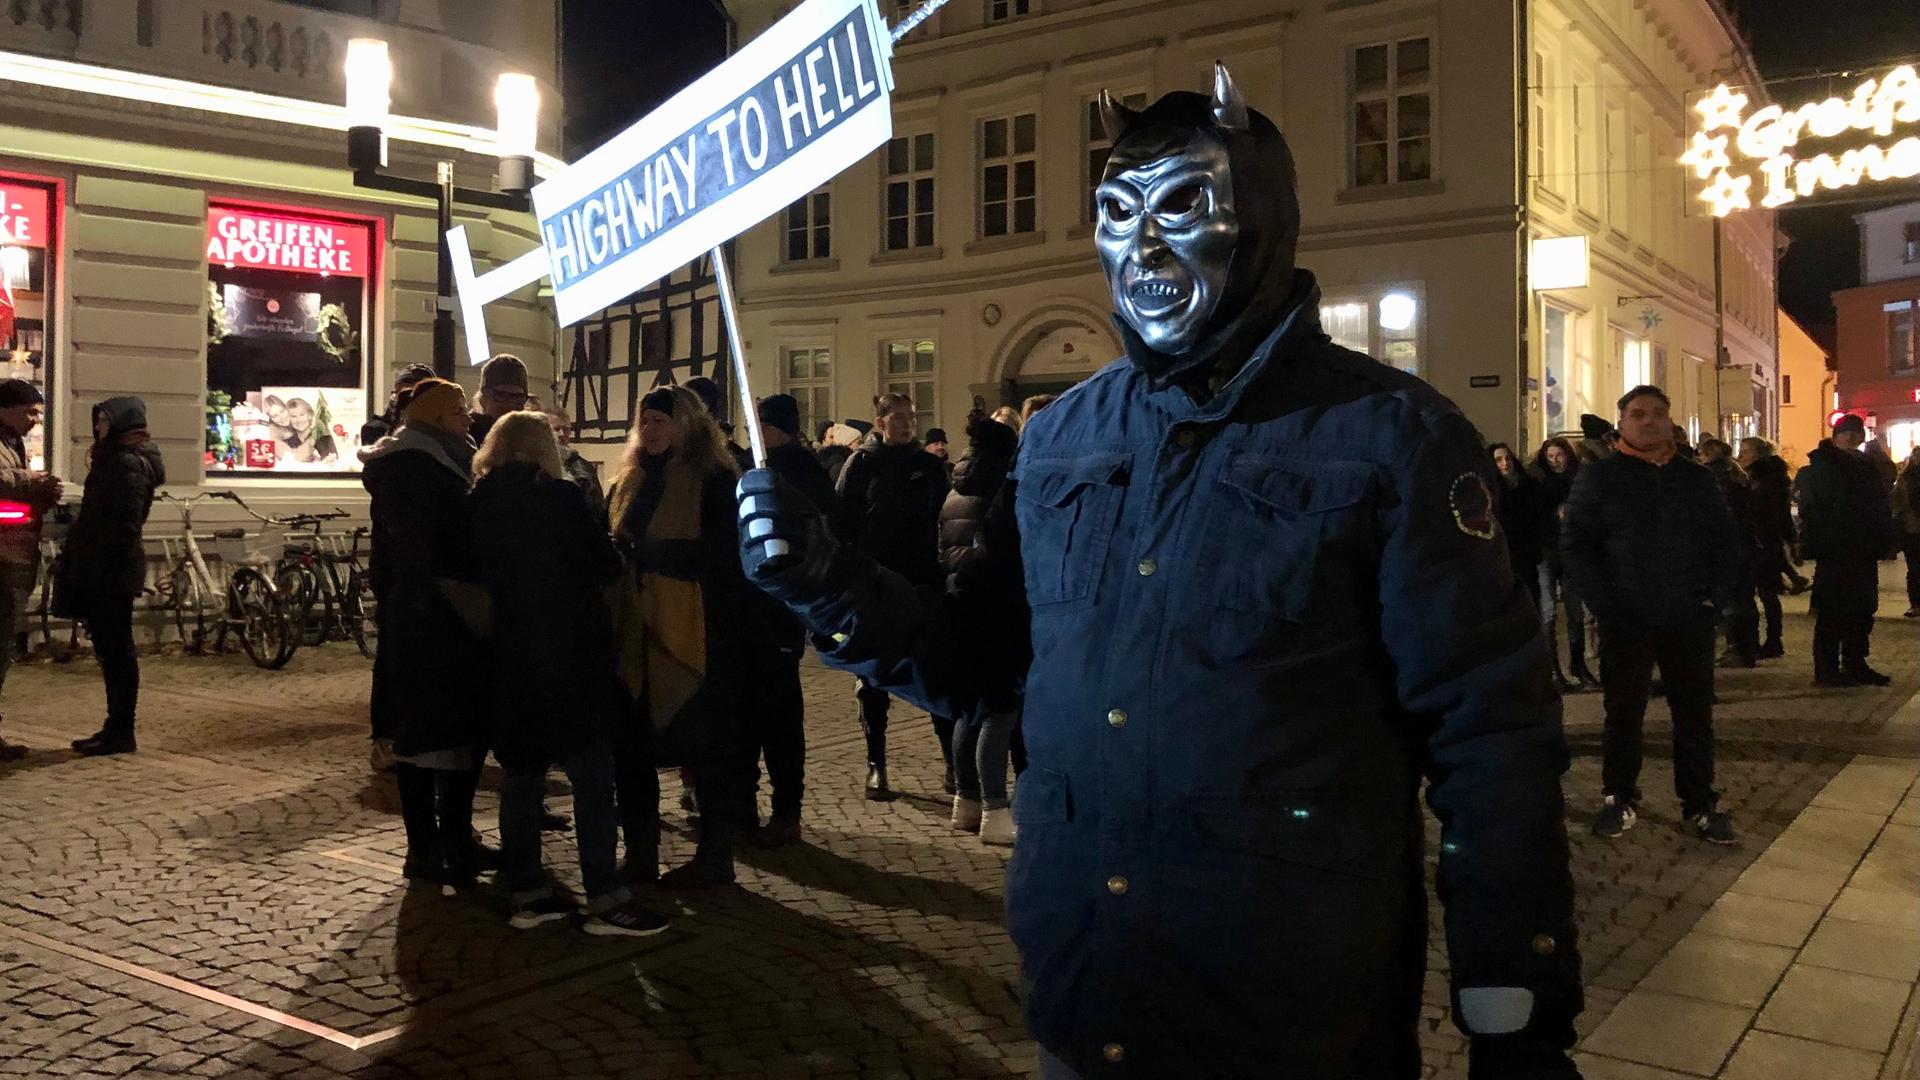 Ein Mann mit Teufelsmaske trägt bei einer Demonstration ein Schild mit der Aufschrift "Highway To Hell".